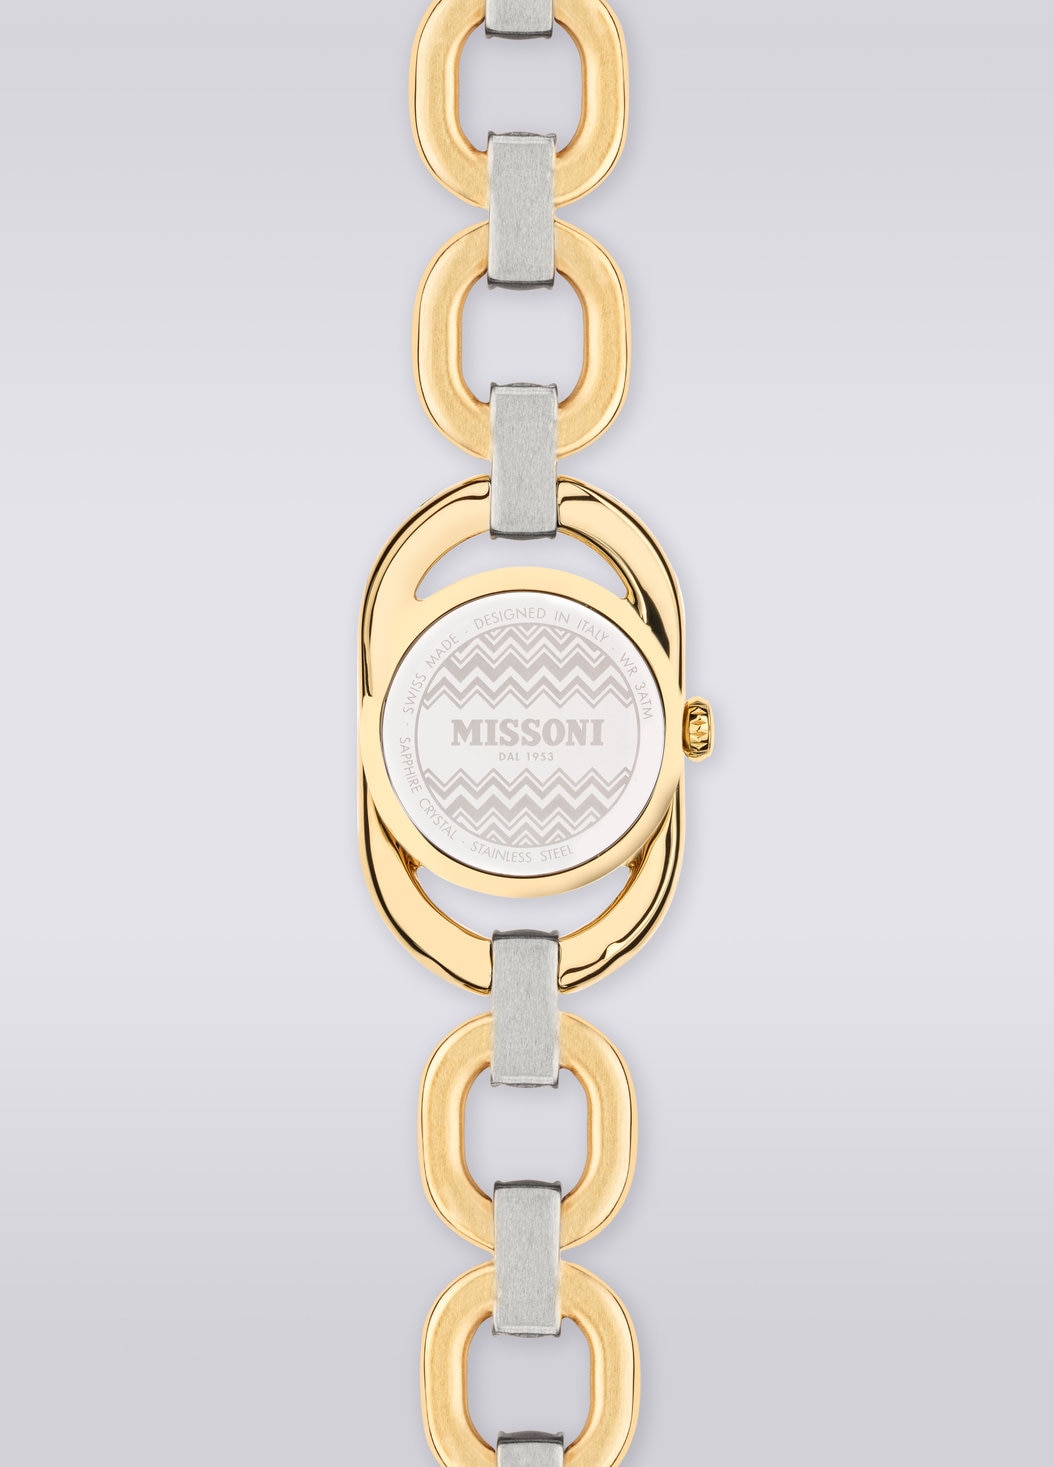 Missoni Gioiello Chain 22,8 MM case size watch, Multicoloured  - 8053147046198 - 2